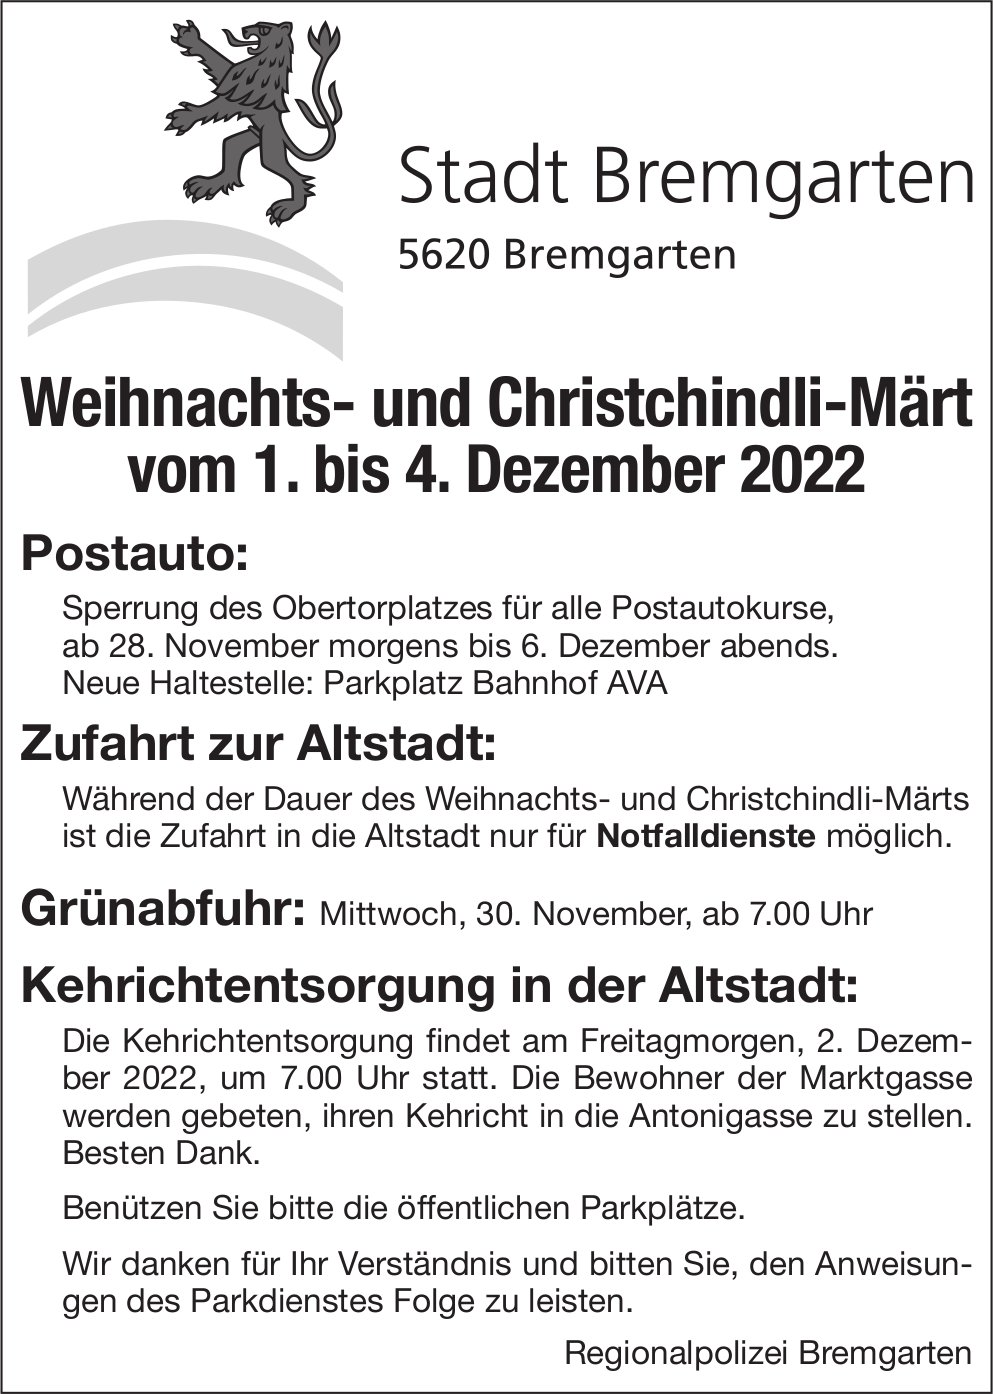 Bremgarten - Weihnachts- und Christchindli-Märt, 1. bis 4. Dezember